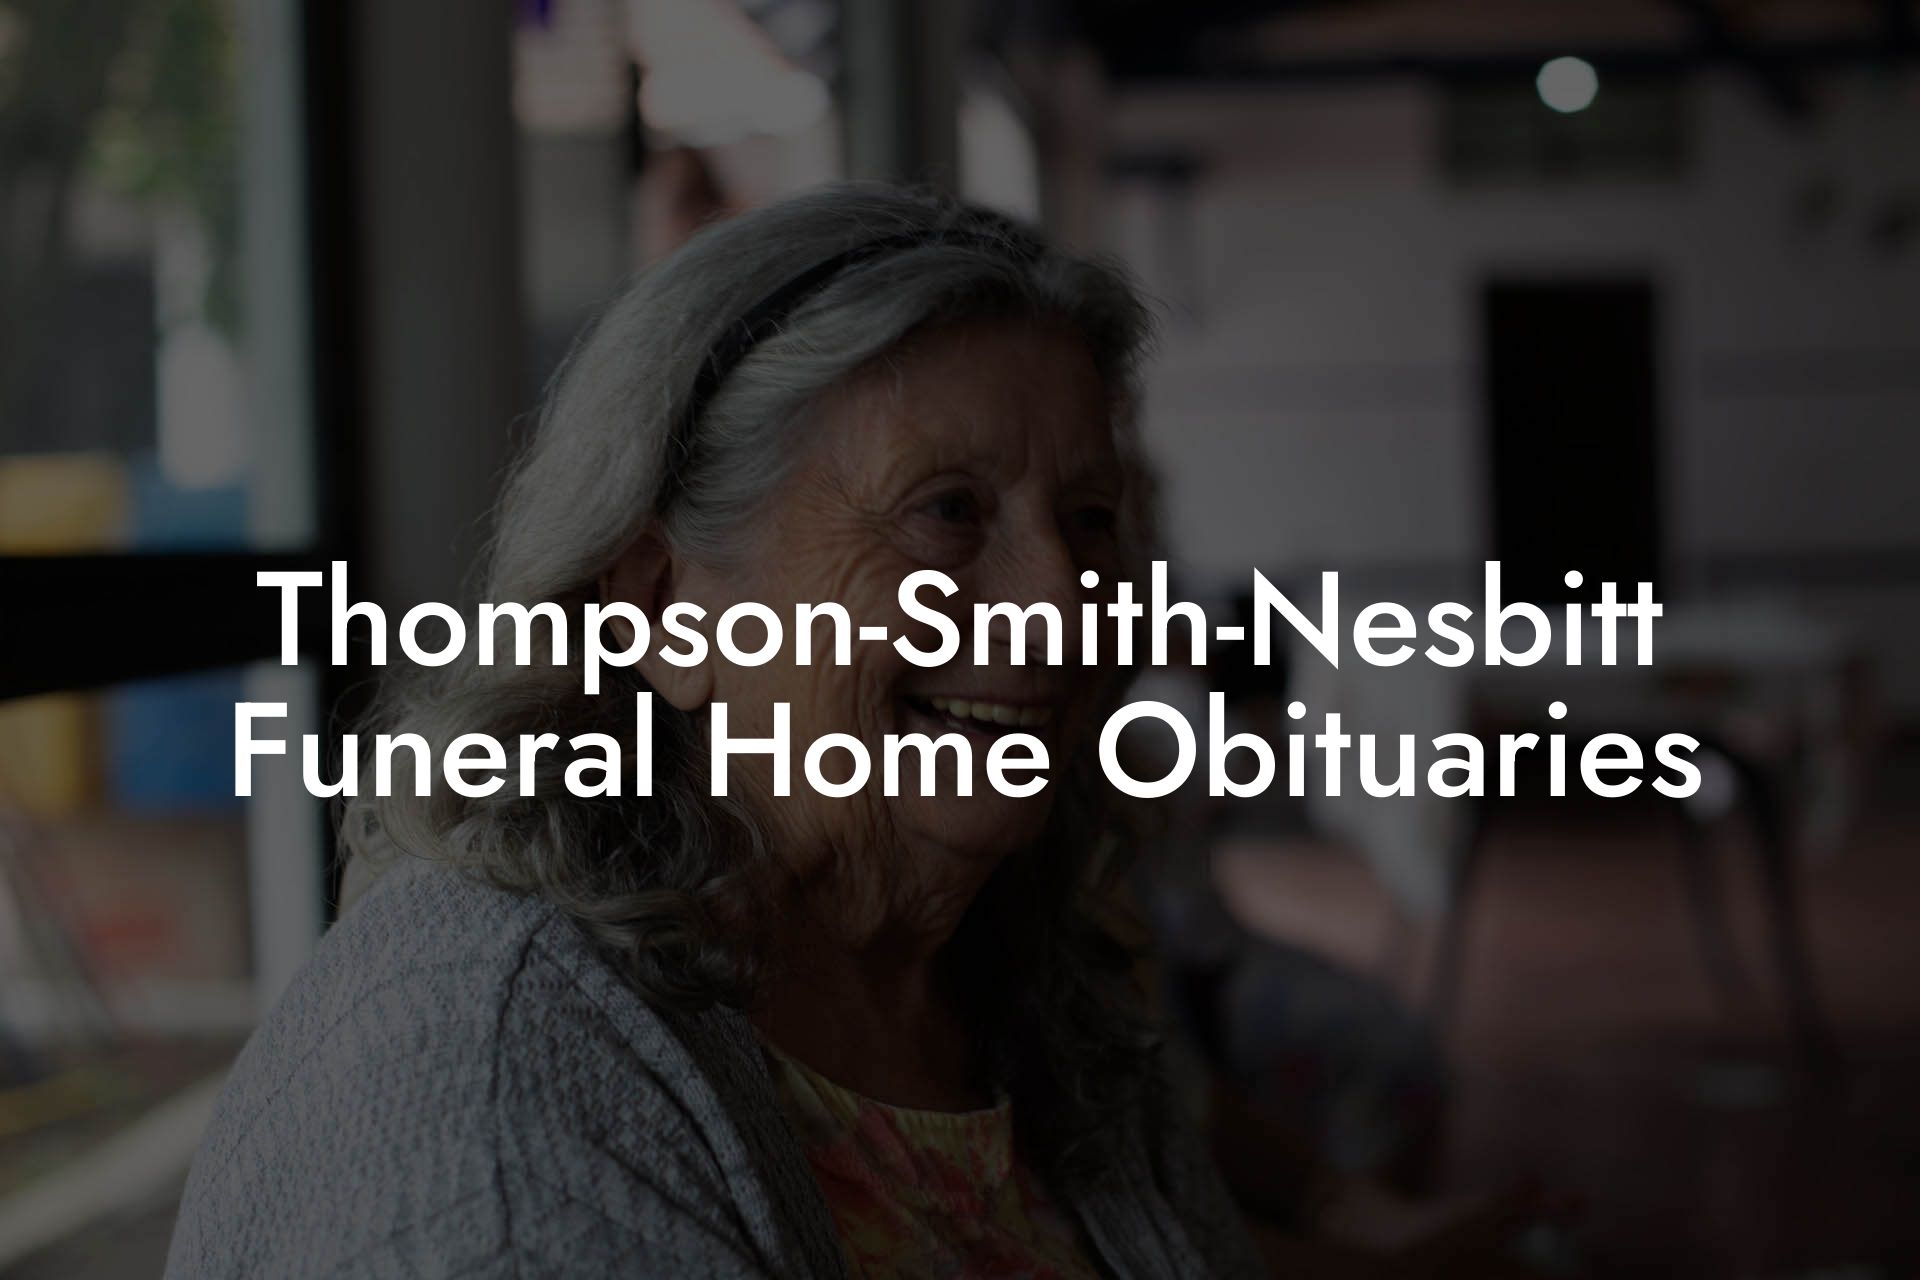 Thompson-Smith-Nesbitt Funeral Home Obituaries